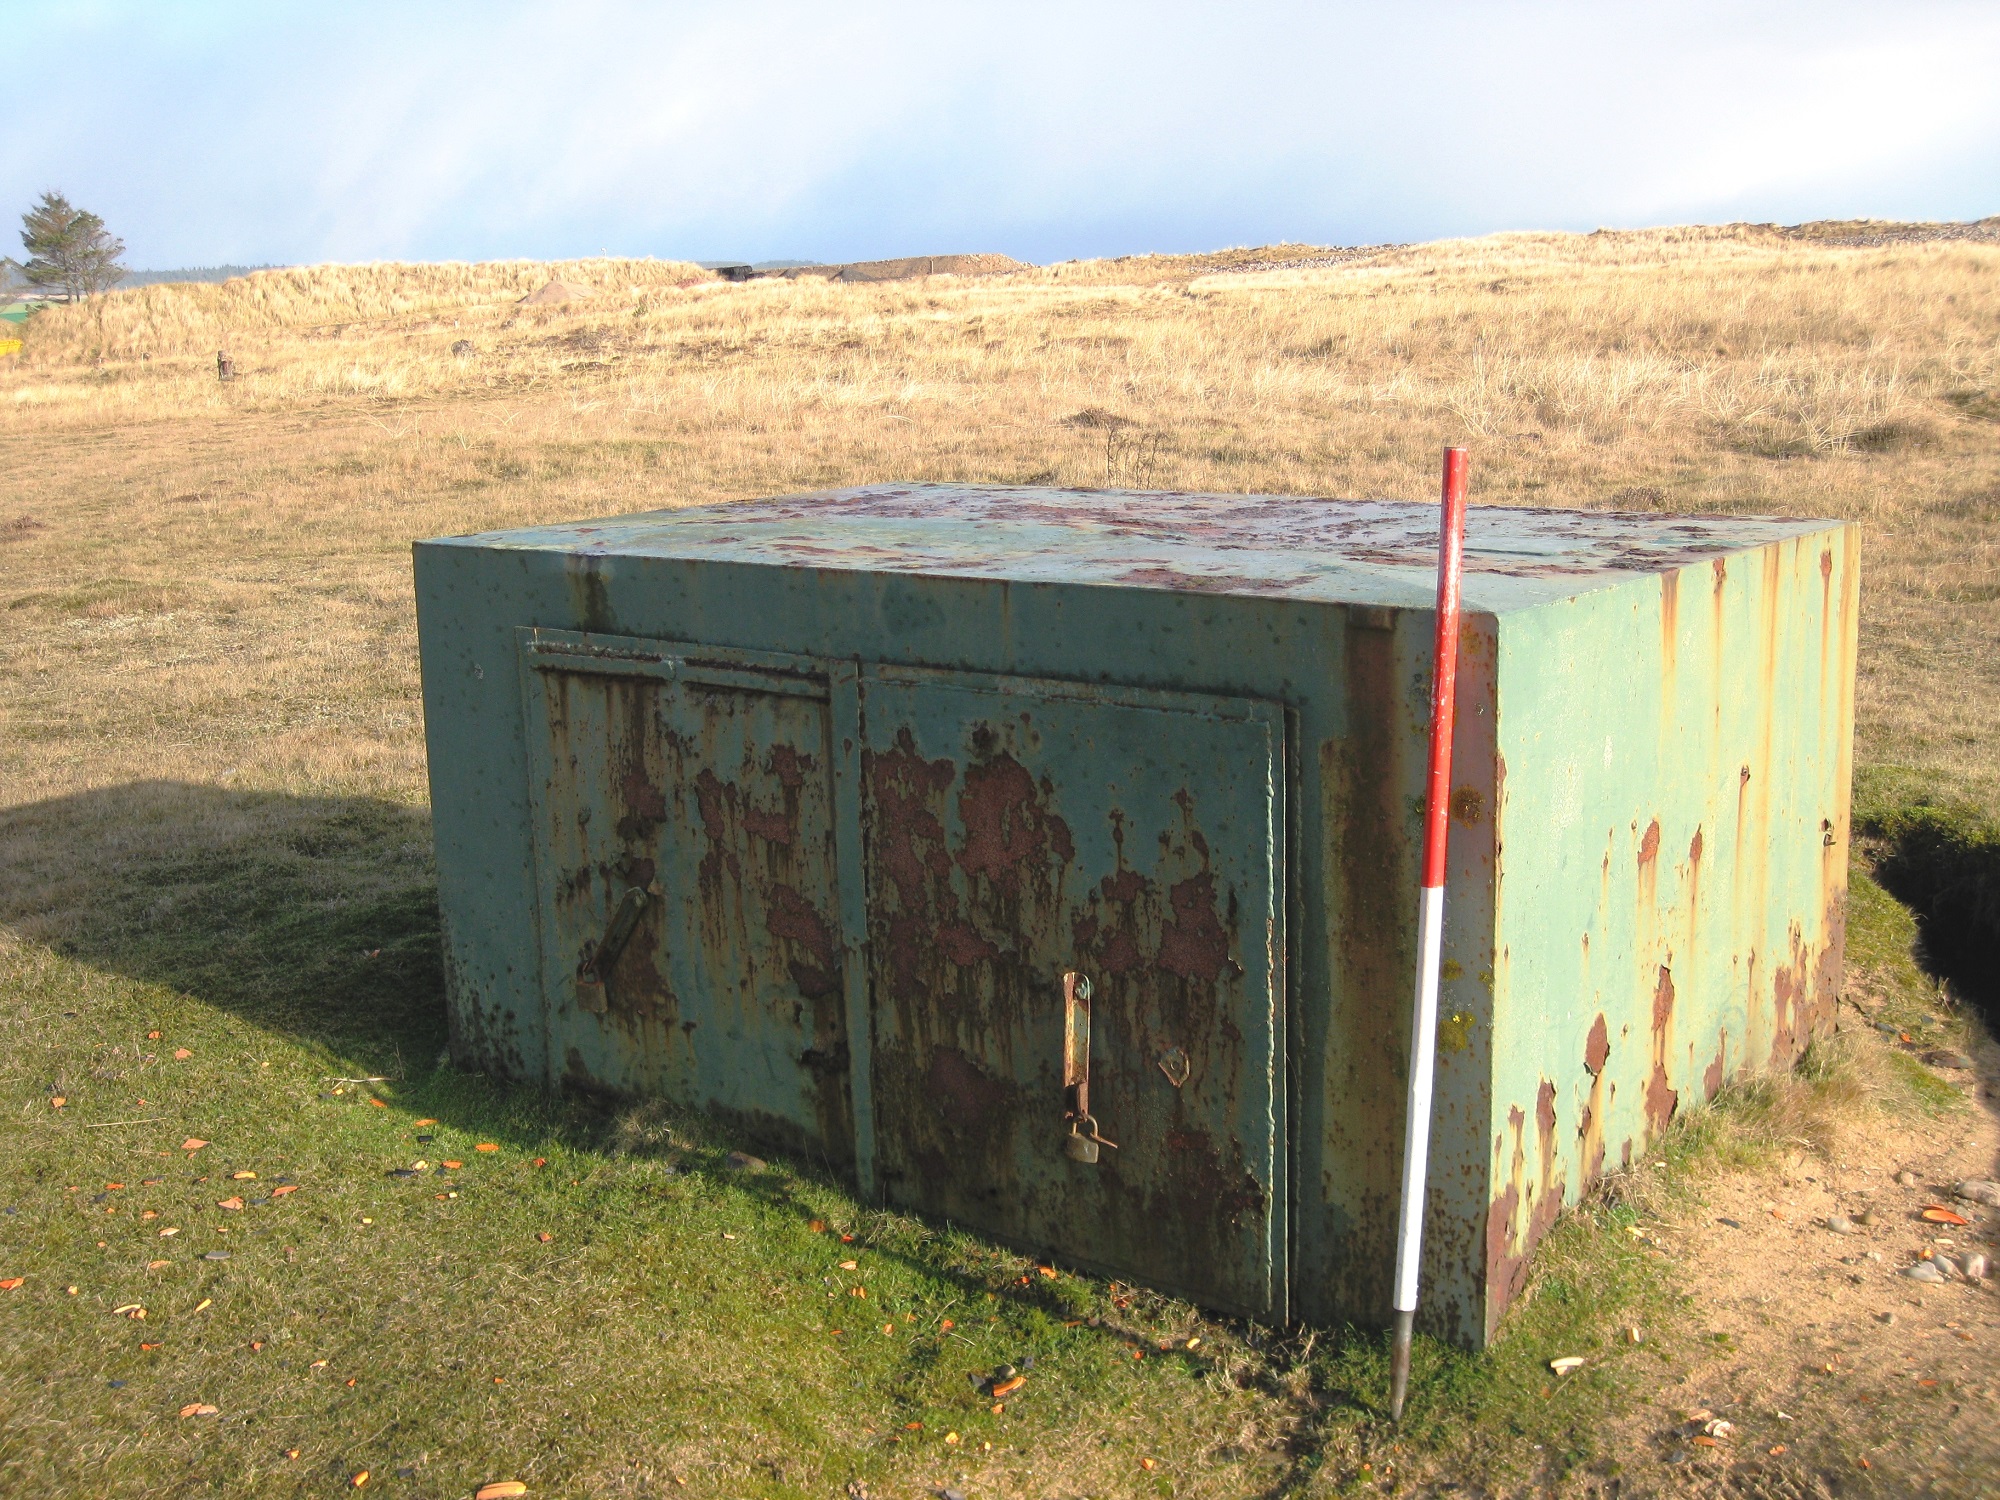 Amunition metal box photo taken facing north east